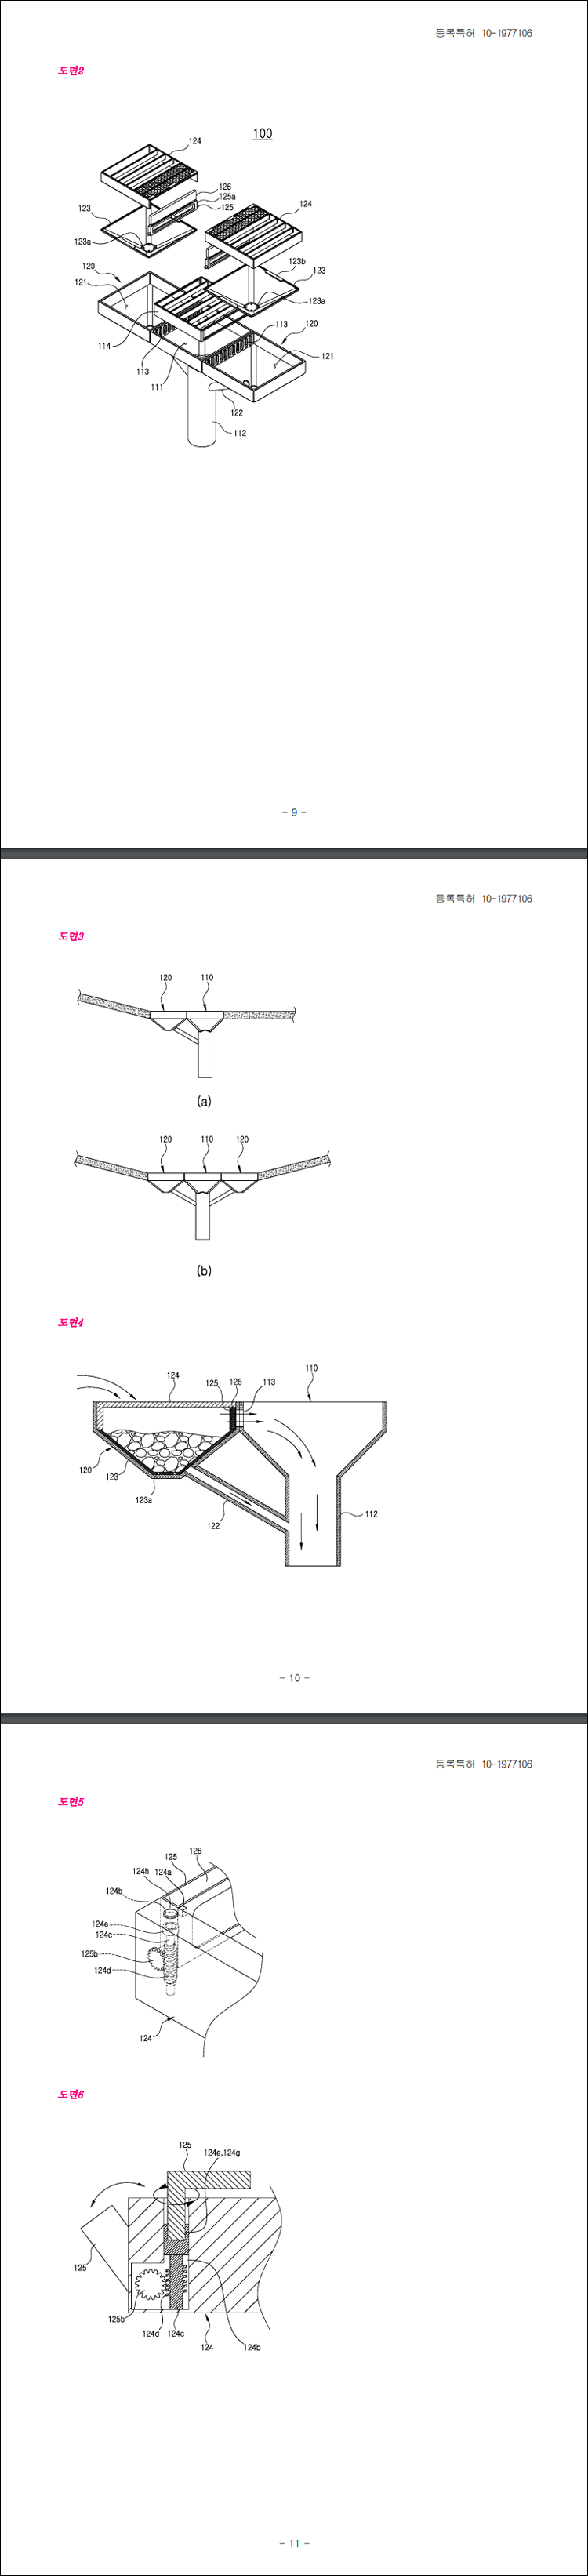 특허 제10-1977106호(모래여과 배수구, 이동진)